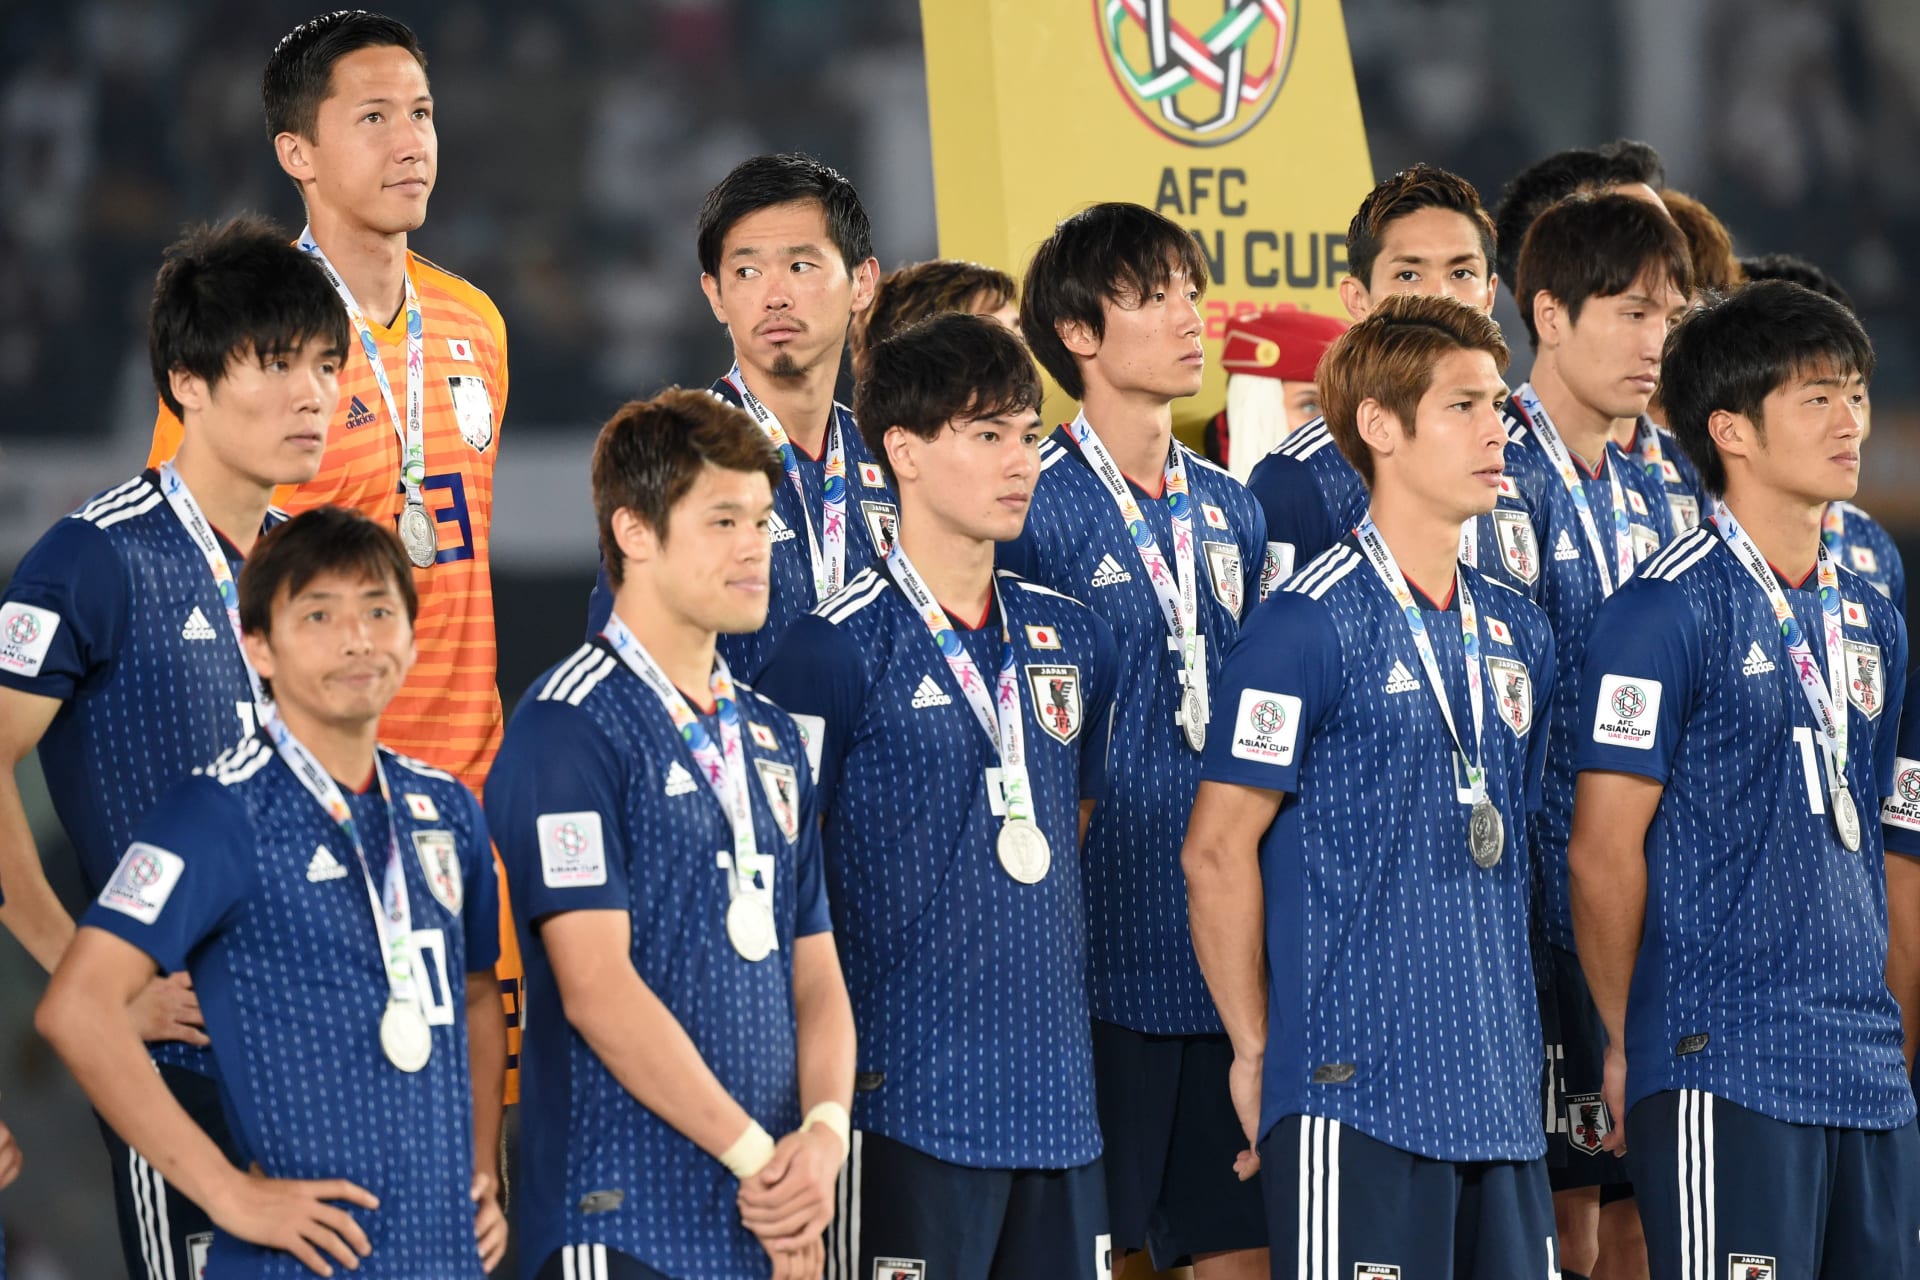 منتخب اليابان ينظف غرفة ملابسه بعد مباراة قطر ويترك رسالة بـ3 لغات